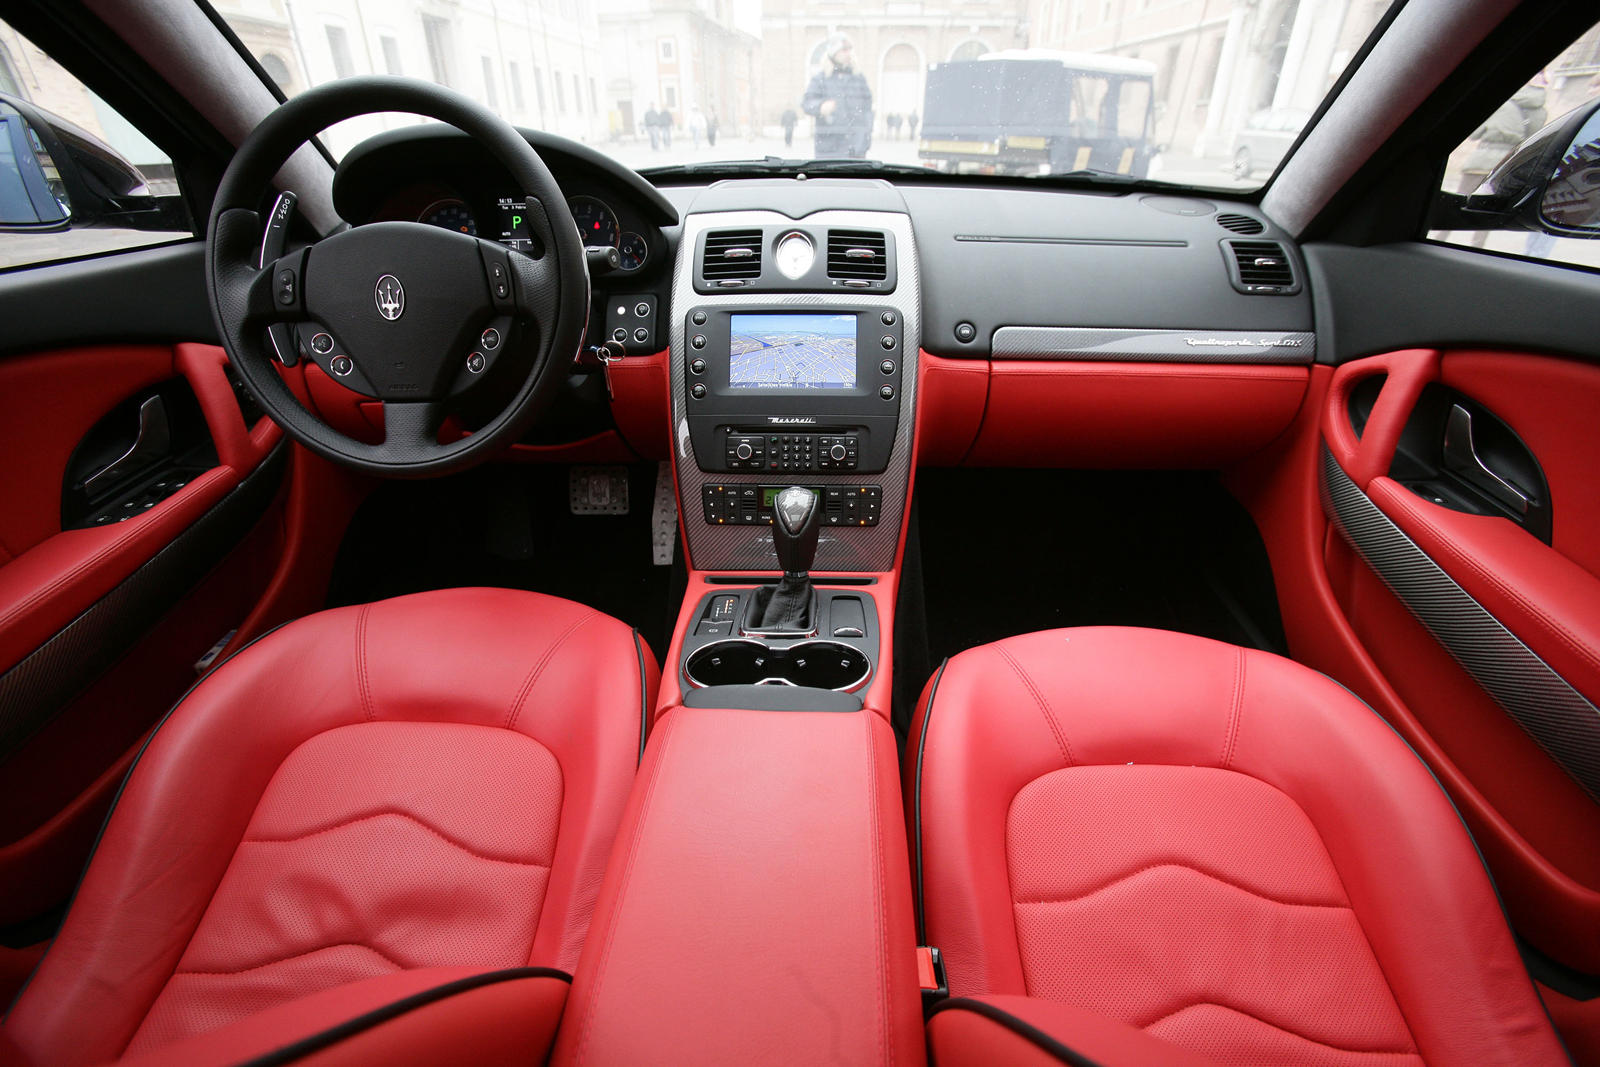 2009 Maserati Quattroporte Dashboard